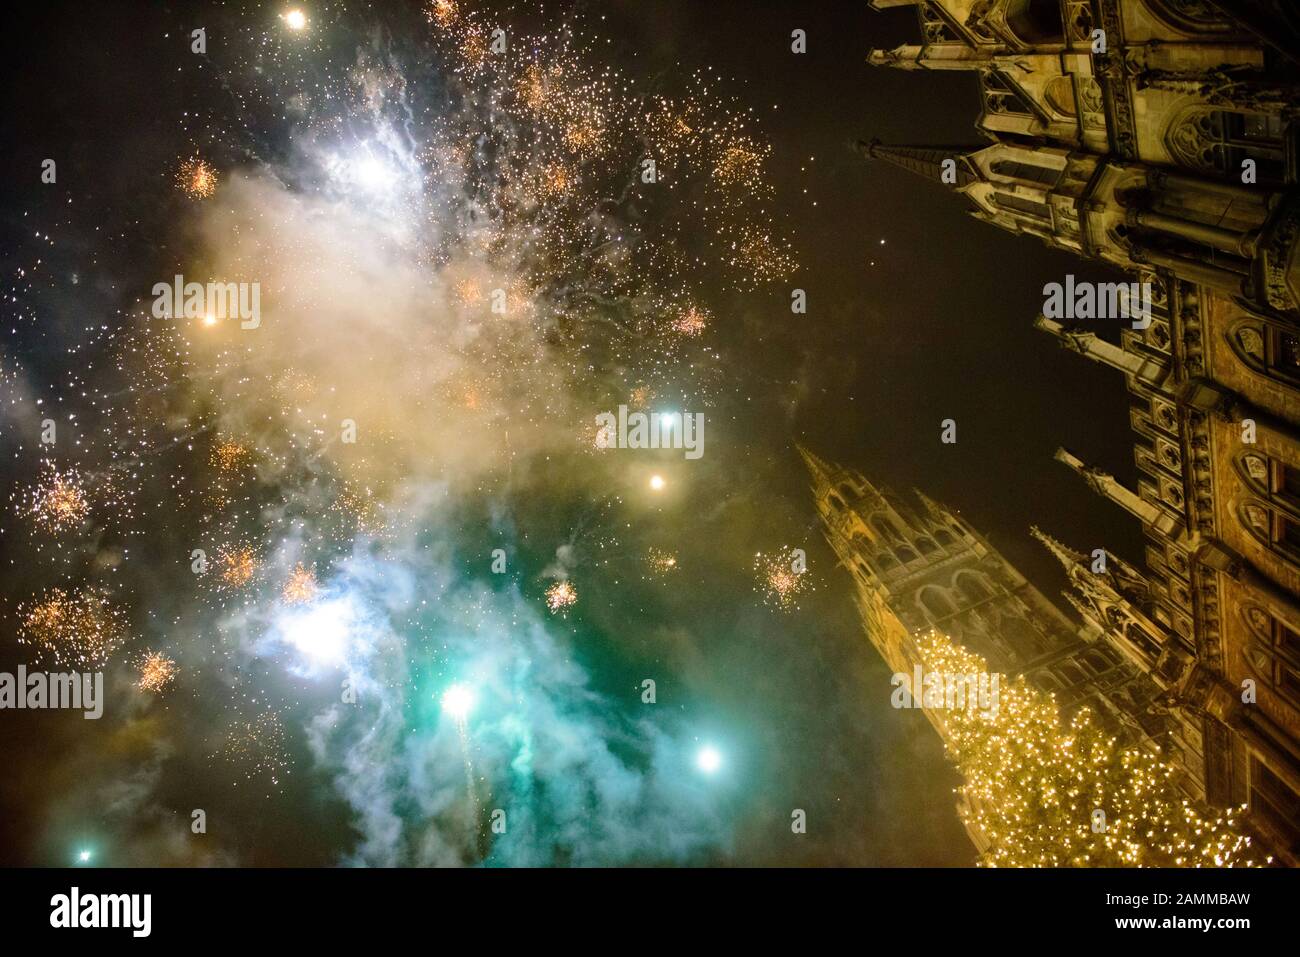 I fuochi d'artificio alla fine dell'anno 2016/17 sulla Marienplatz di Monaco. [traduzione automatizzata] Foto Stock